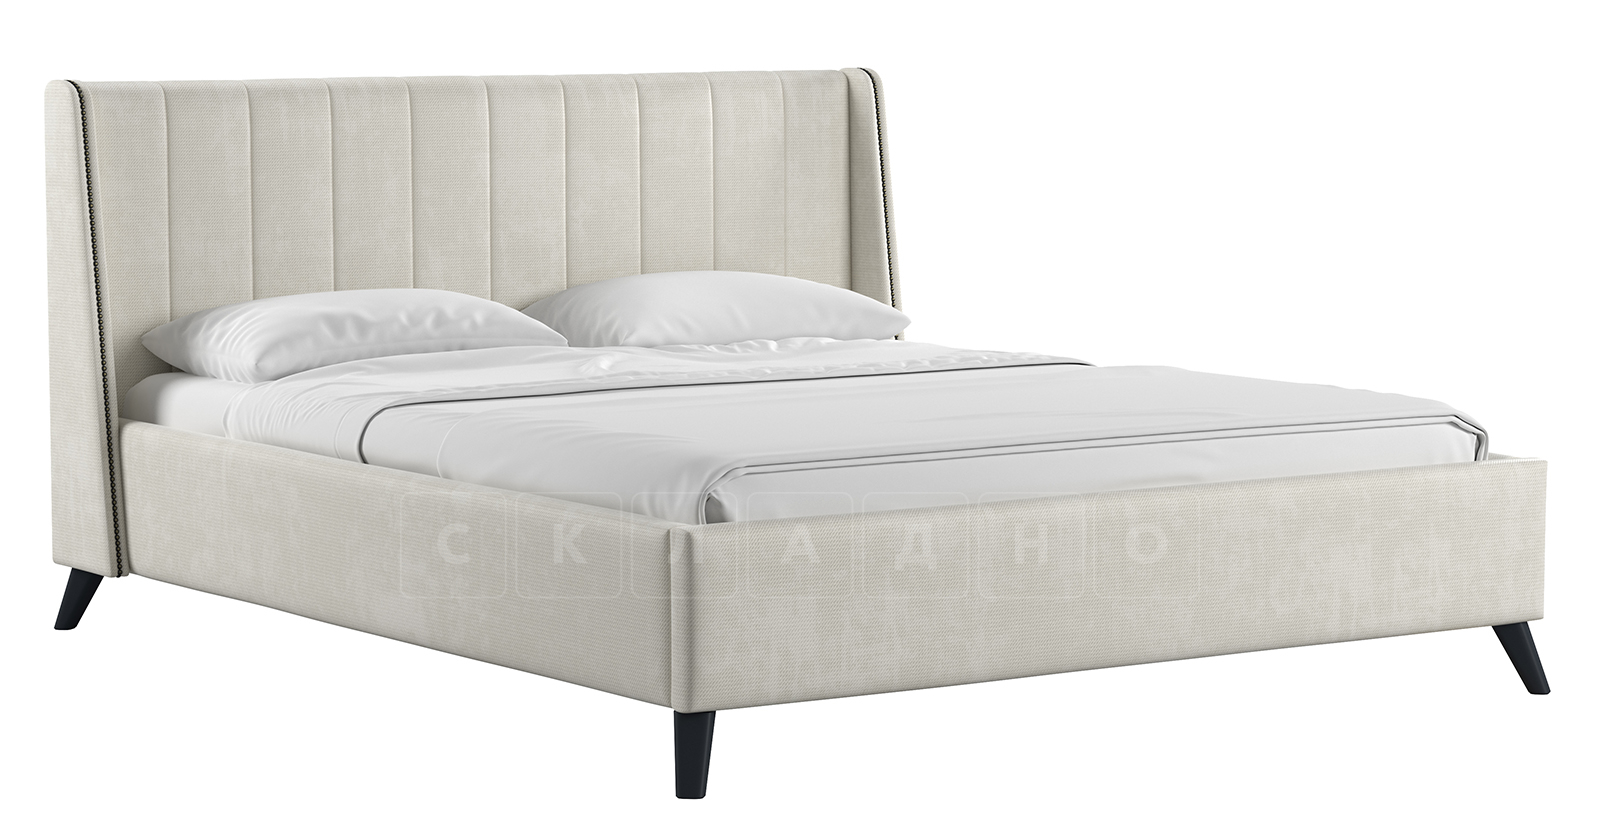 Мягкая кровать Мелисса 160 см велюр светло-бежевый фото 1 | интернет-магазин Складно